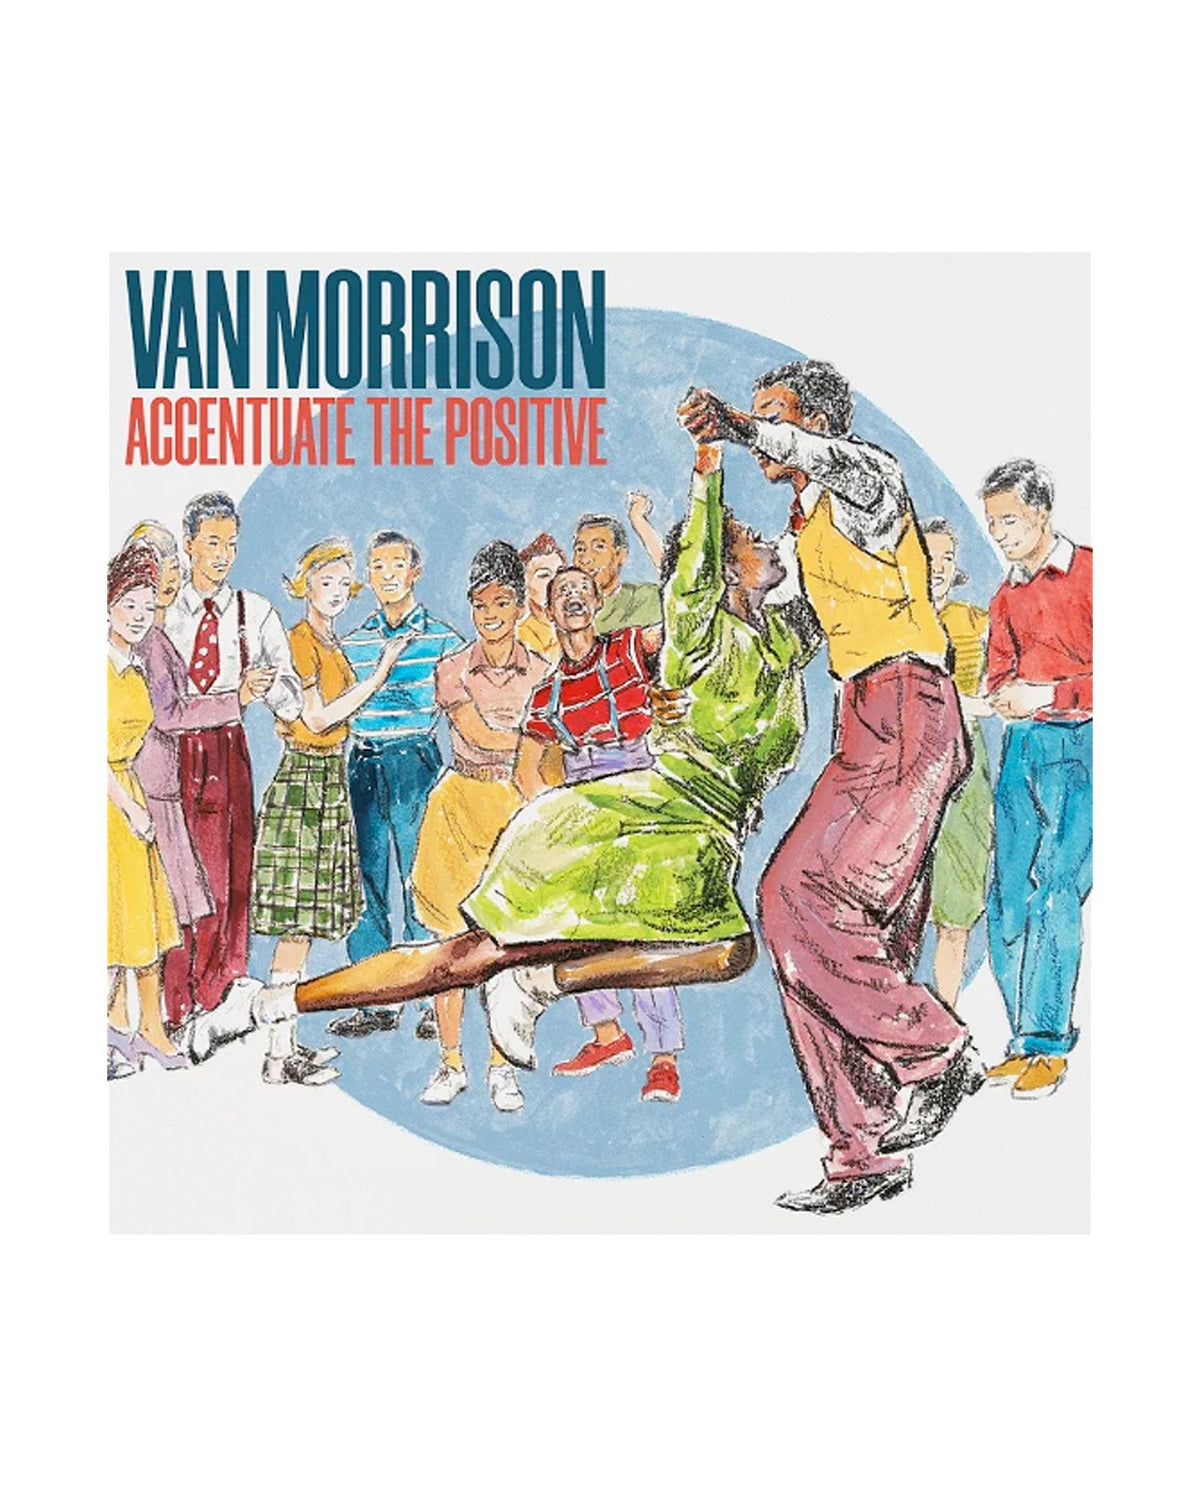 Van Morrison - LP Vinilo "Accentuate The Positive" - D2fy · Rocktud - Rocktud